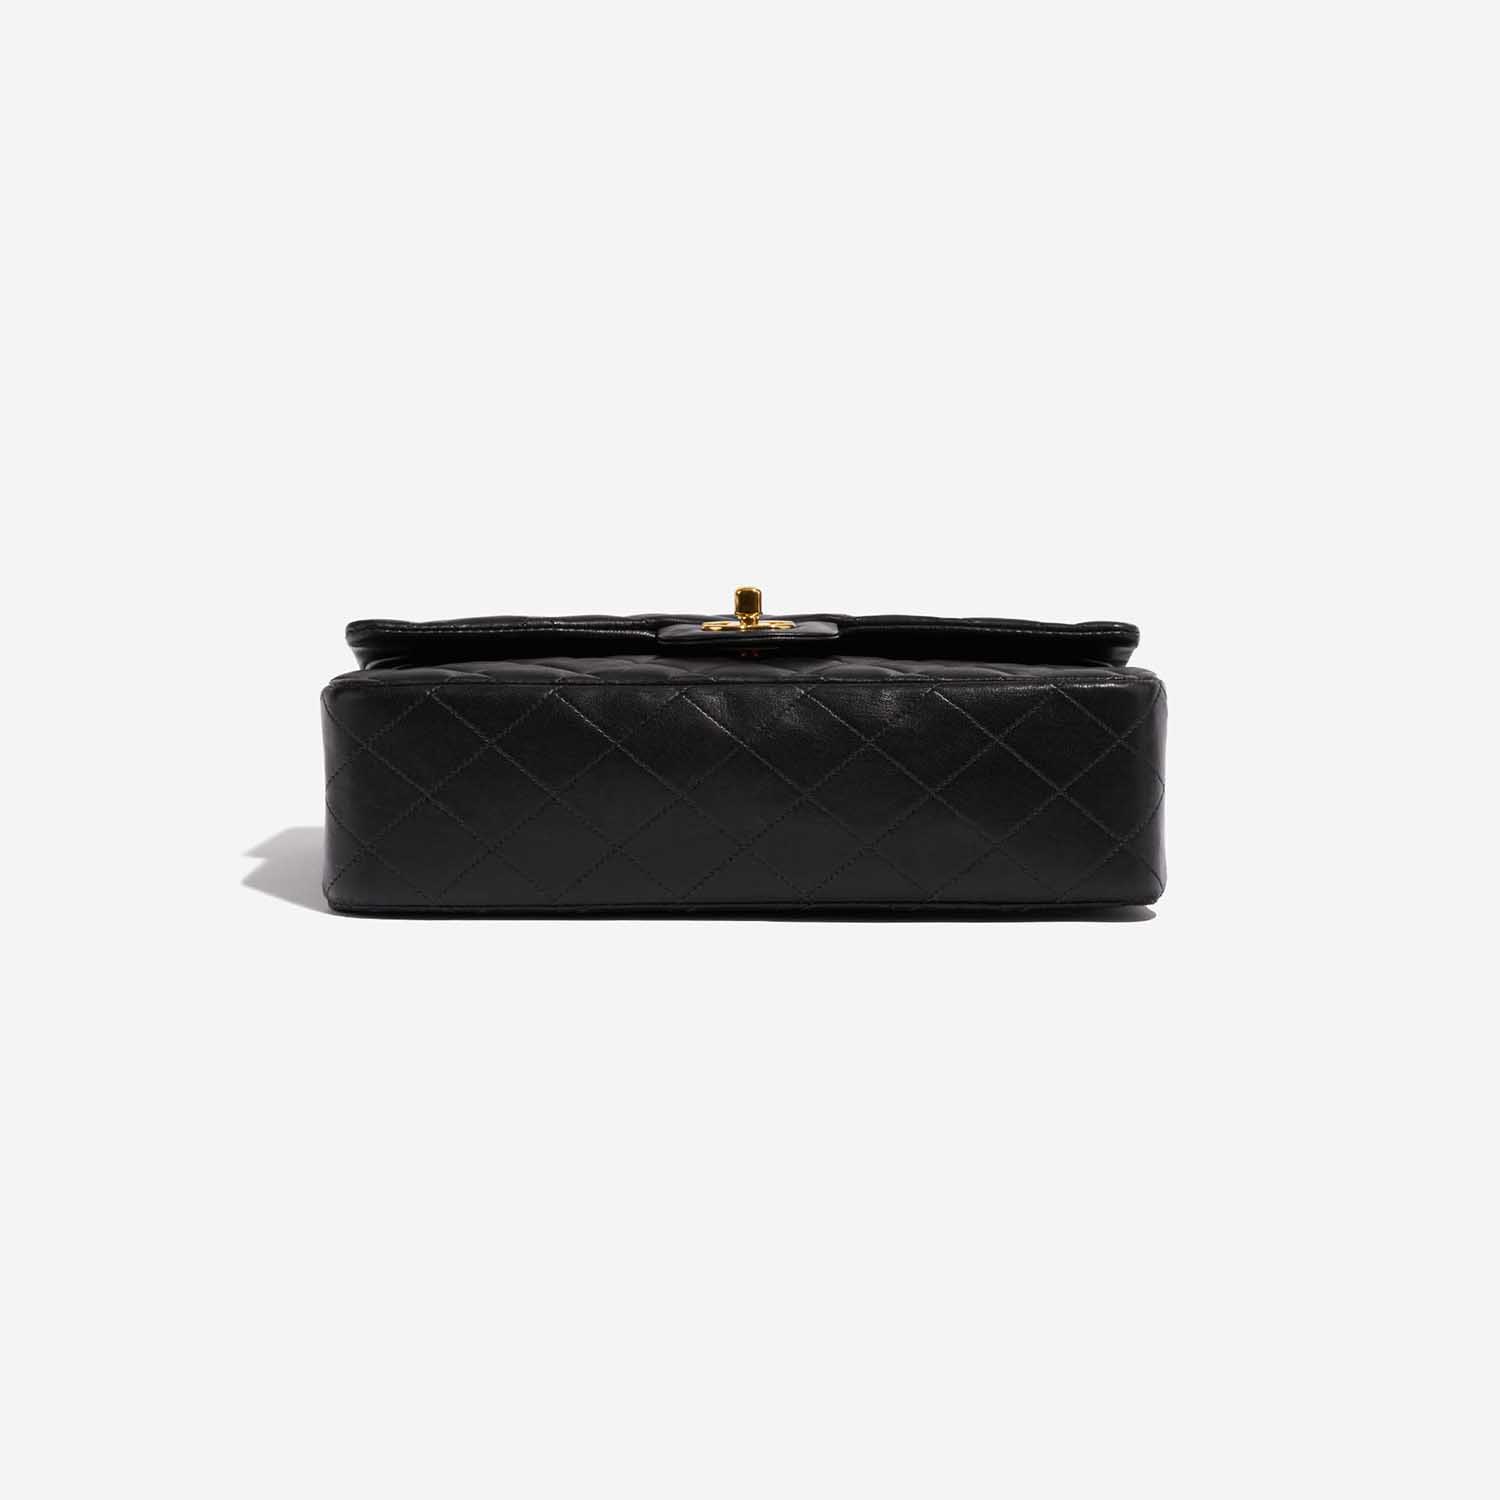 Pre-owned Chanel Tasche Timeless Medium Lammleder Schwarz Schwarzer Boden | Verkaufen Sie Ihre Designer-Tasche auf Saclab.com